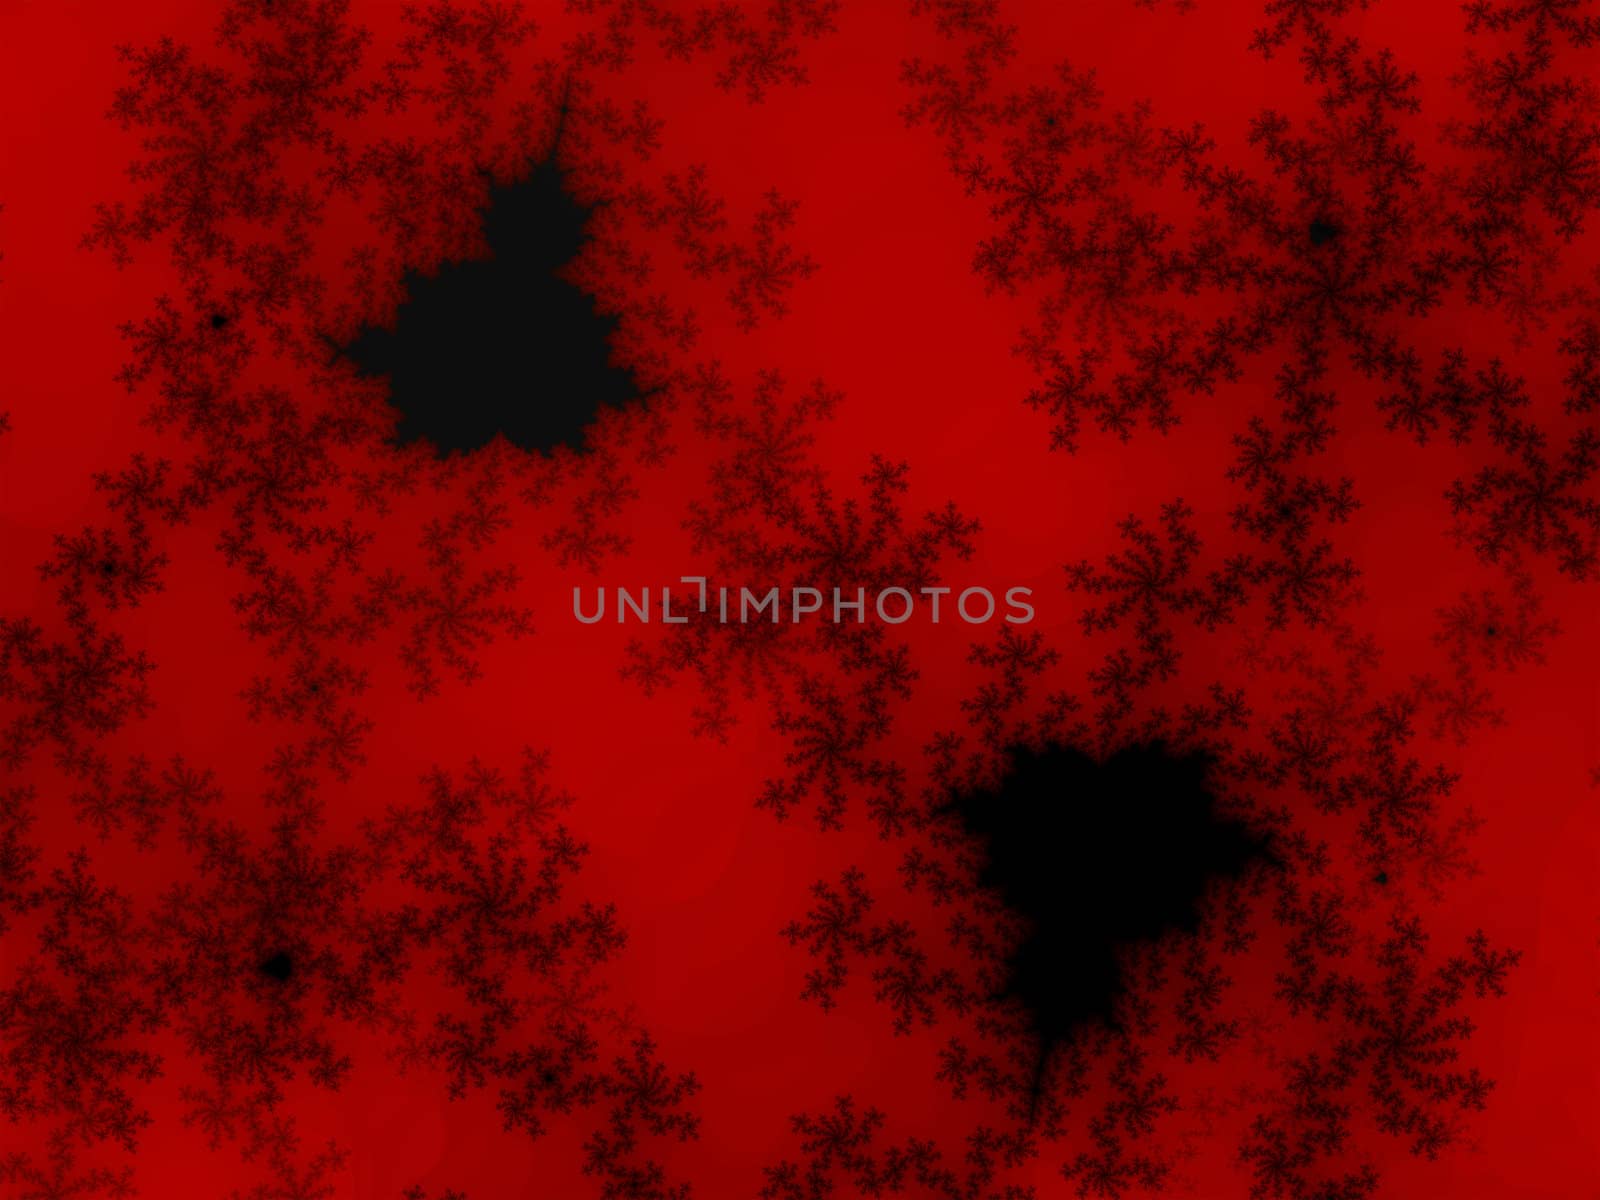 Deep Red Fractal Design Illustration Detailed Background Patter